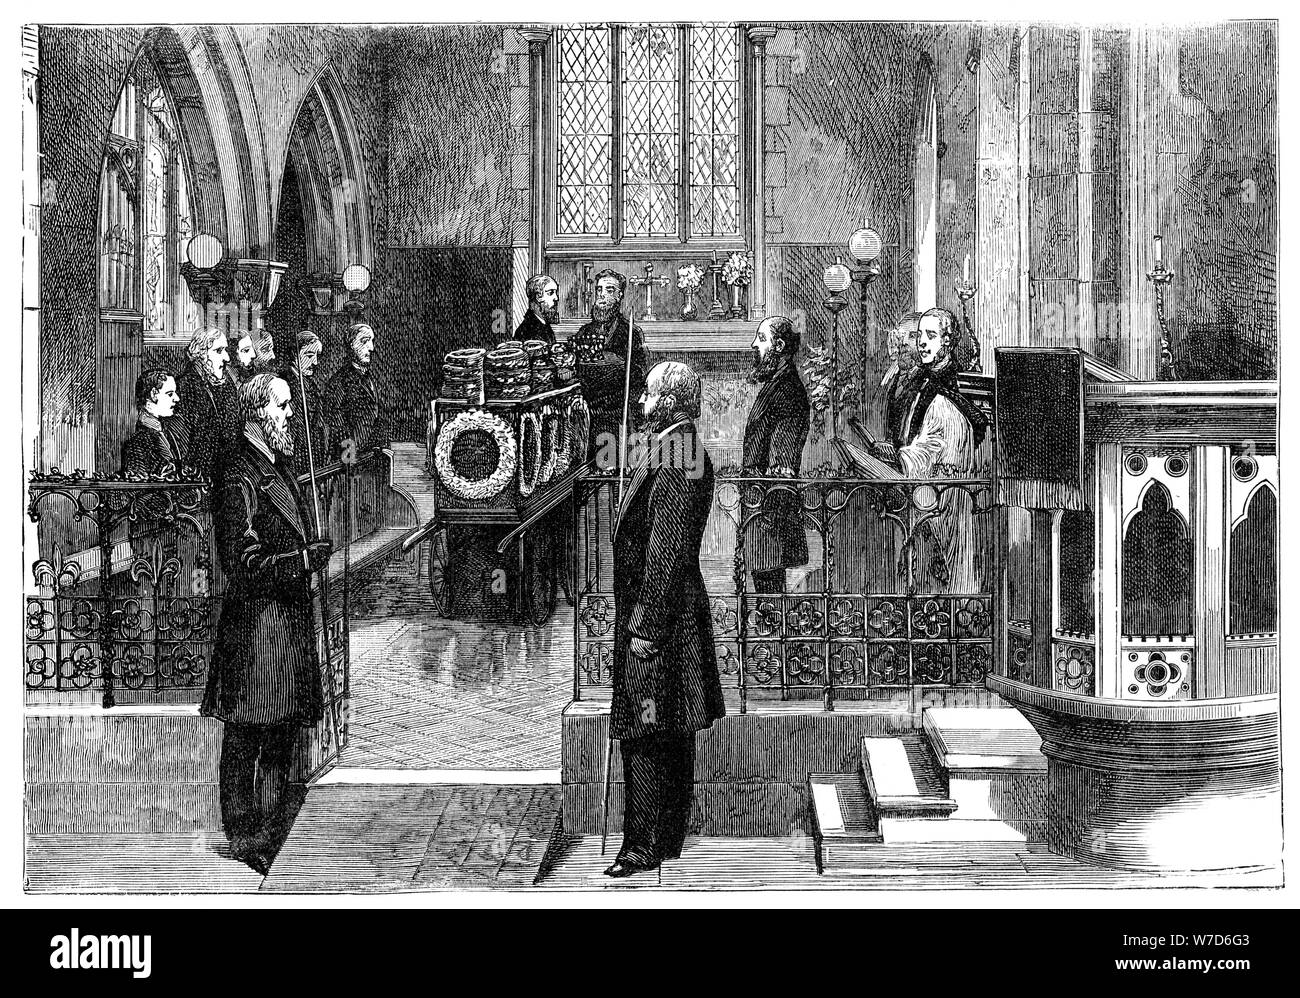 Los funerales de Benjamín Disraeli (1804-1881), el primer ministro británico, a fines del siglo XIX. Artista: Desconocido Foto de stock